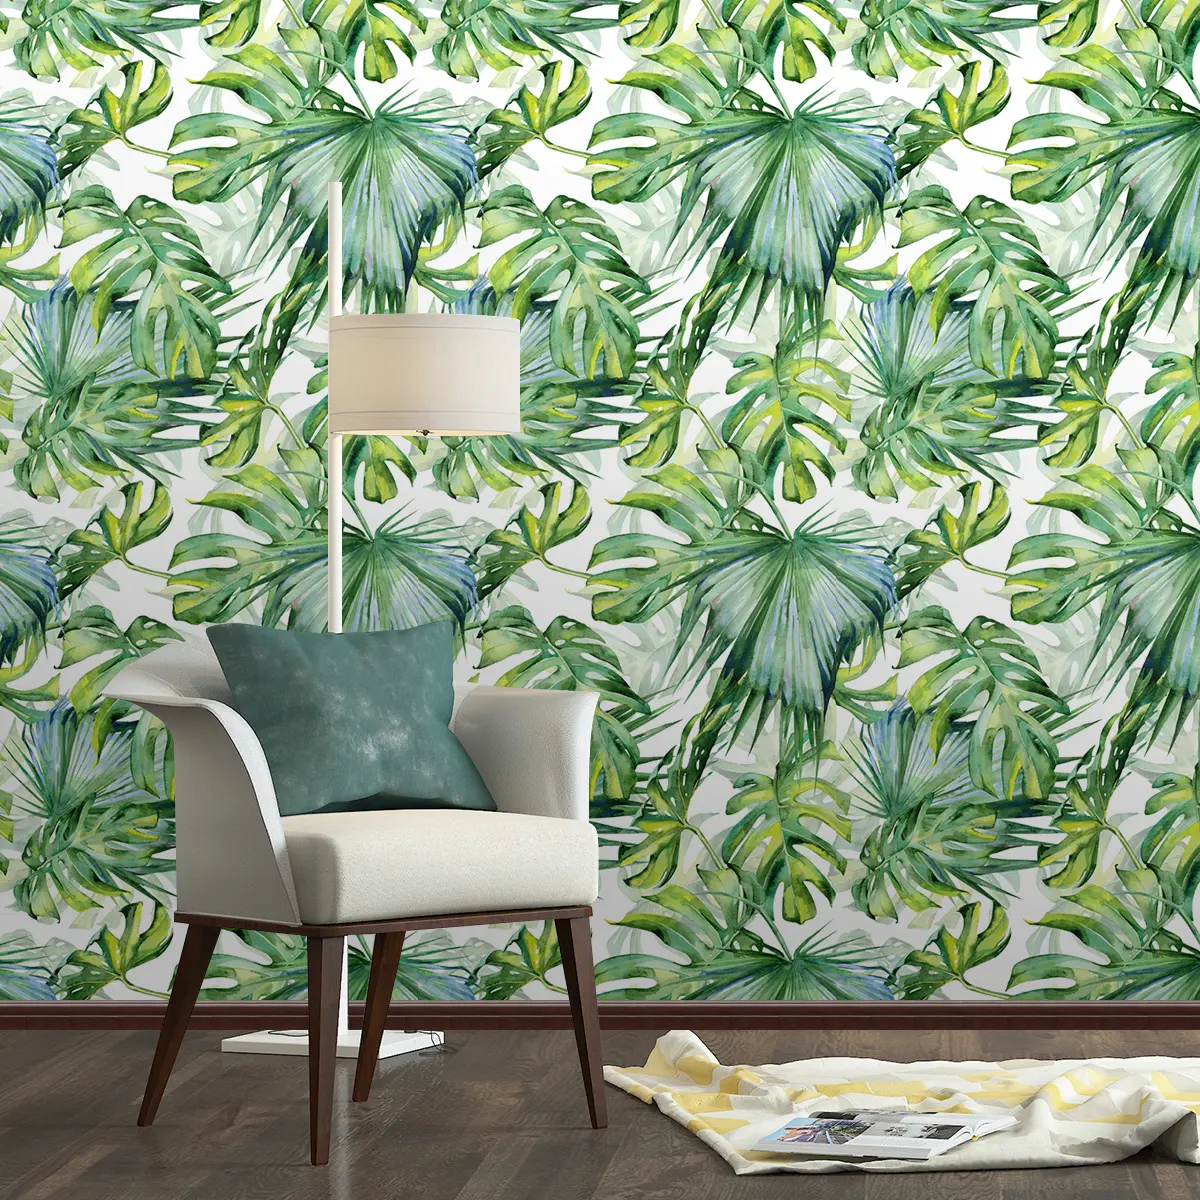 Autocollants muraux amovibles en feuilles tropicales, 2 unités, papier peint vinyle adhésif imperméable pour chambre à coucher, décoration de la maison